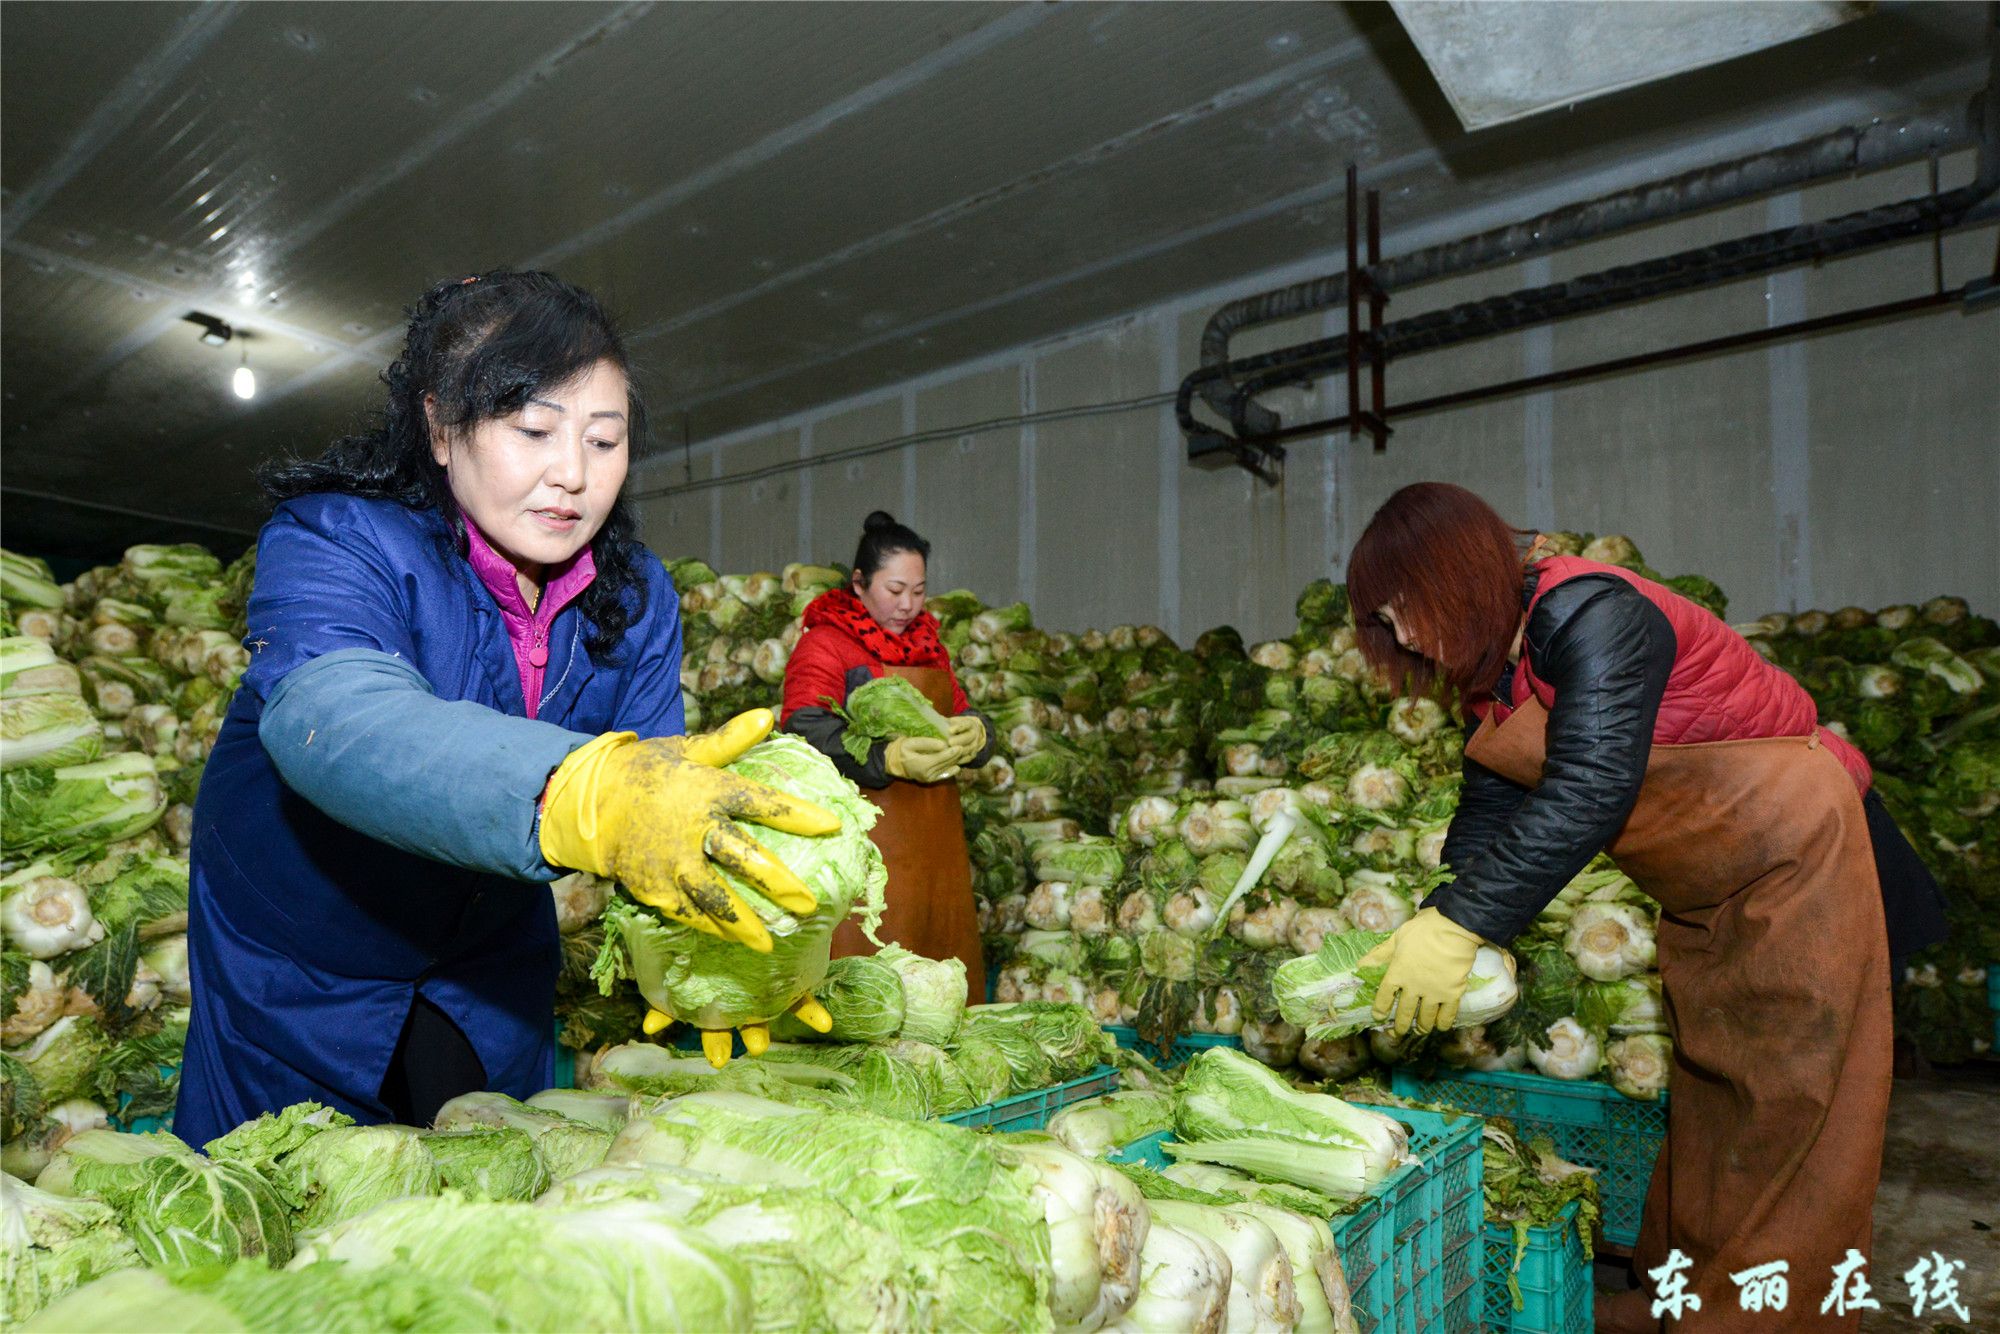 金钟市场为春节蔬菜供应做好冬春储备 - 图片新